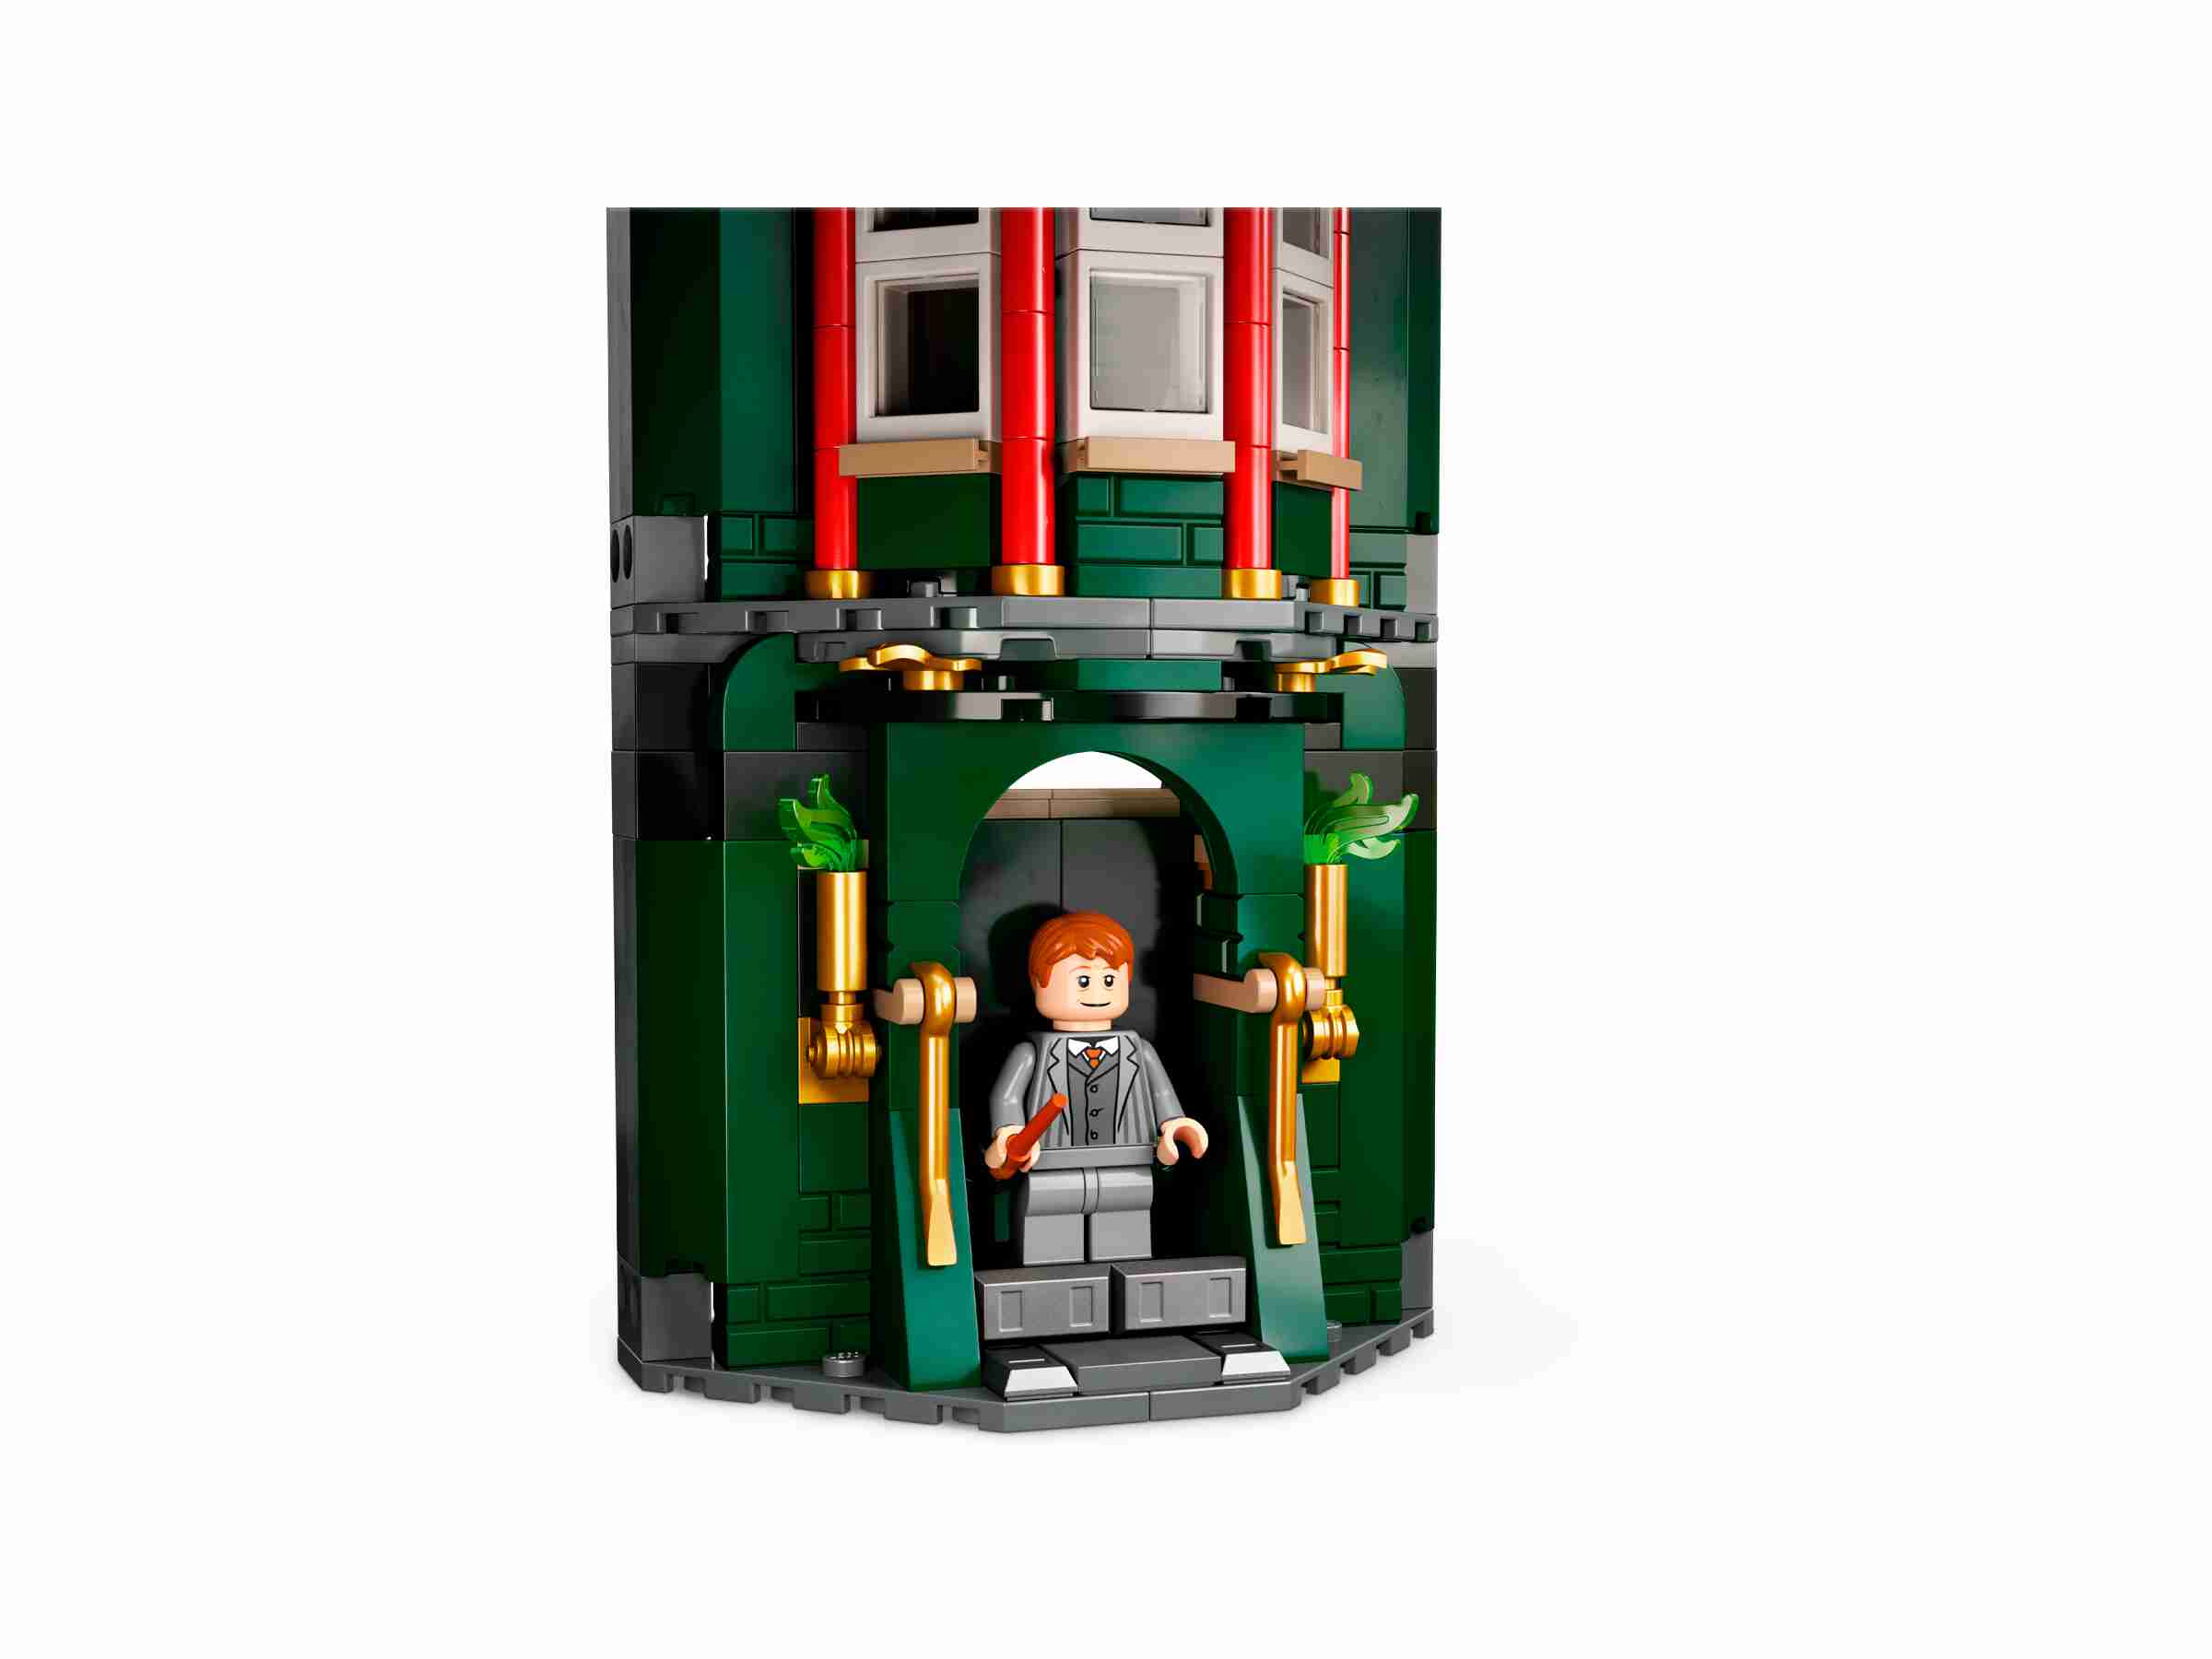 LEGO 76403 Harry Potter Zaubereiministerium modulares Set zum Bauen